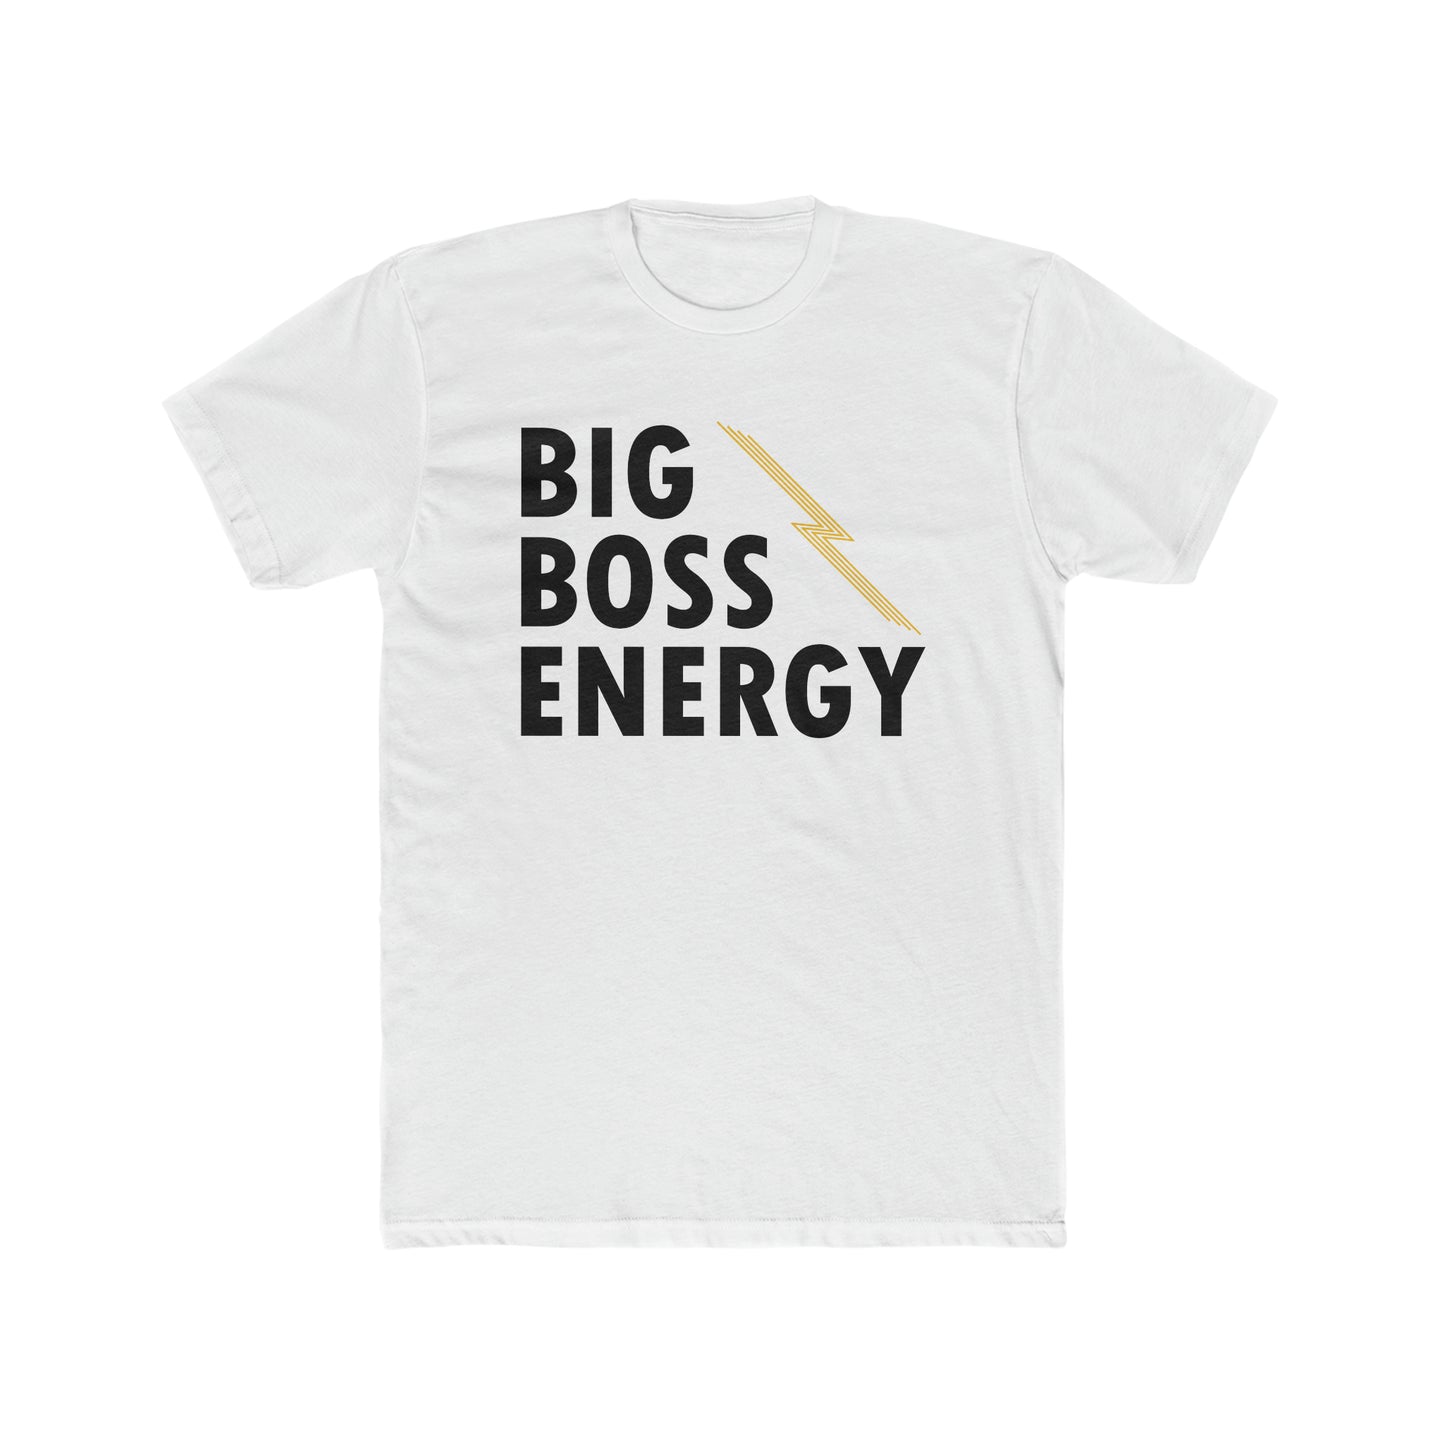 "Big Boss Energy" unisex tee